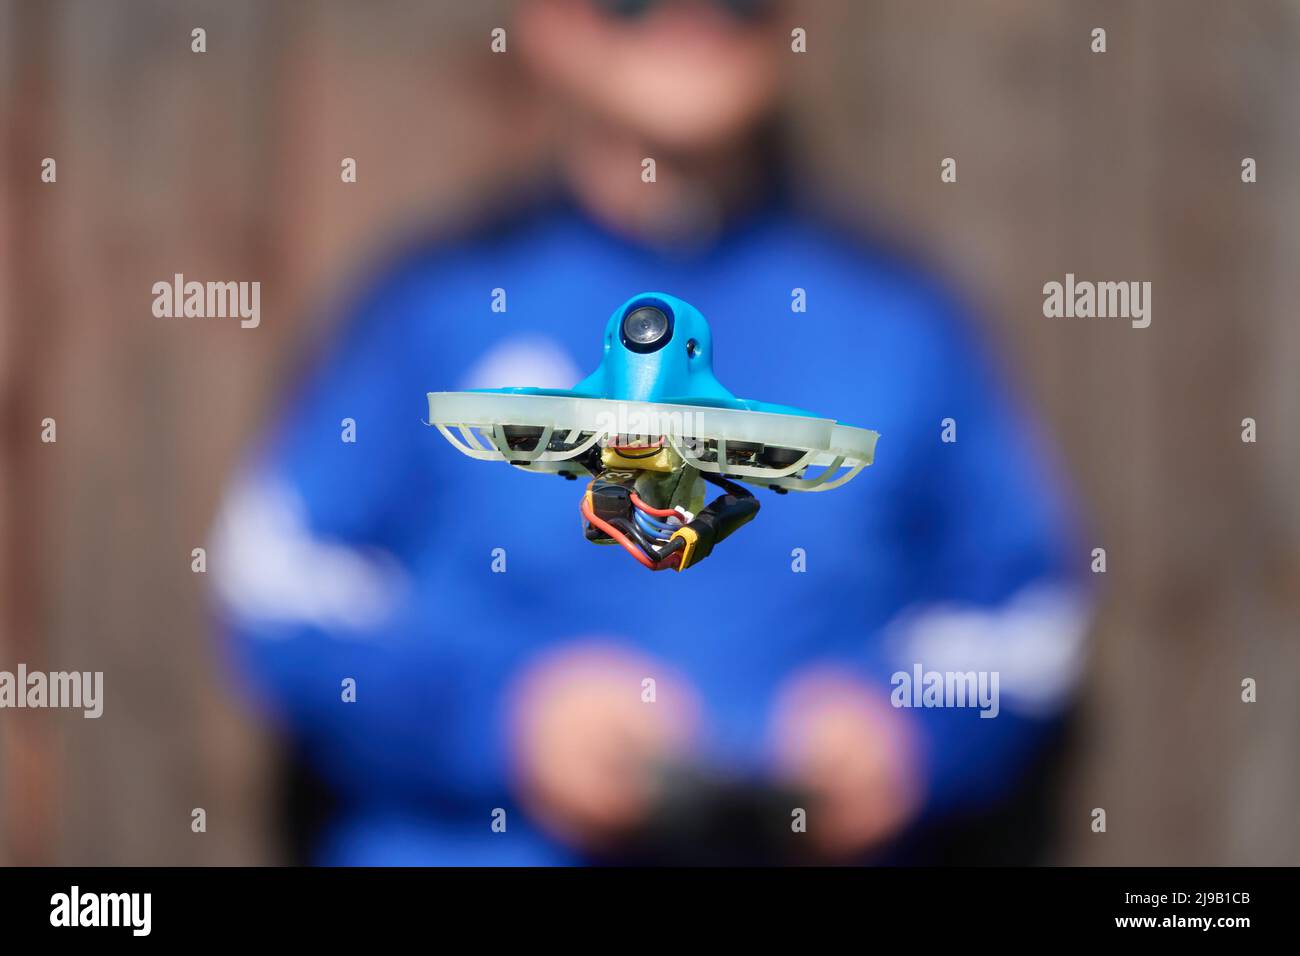 Le petit drone également la course quad en bleu est précisément contrôlée par le pilote humain, mur en marron comme fond.Allemagne. Banque D'Images